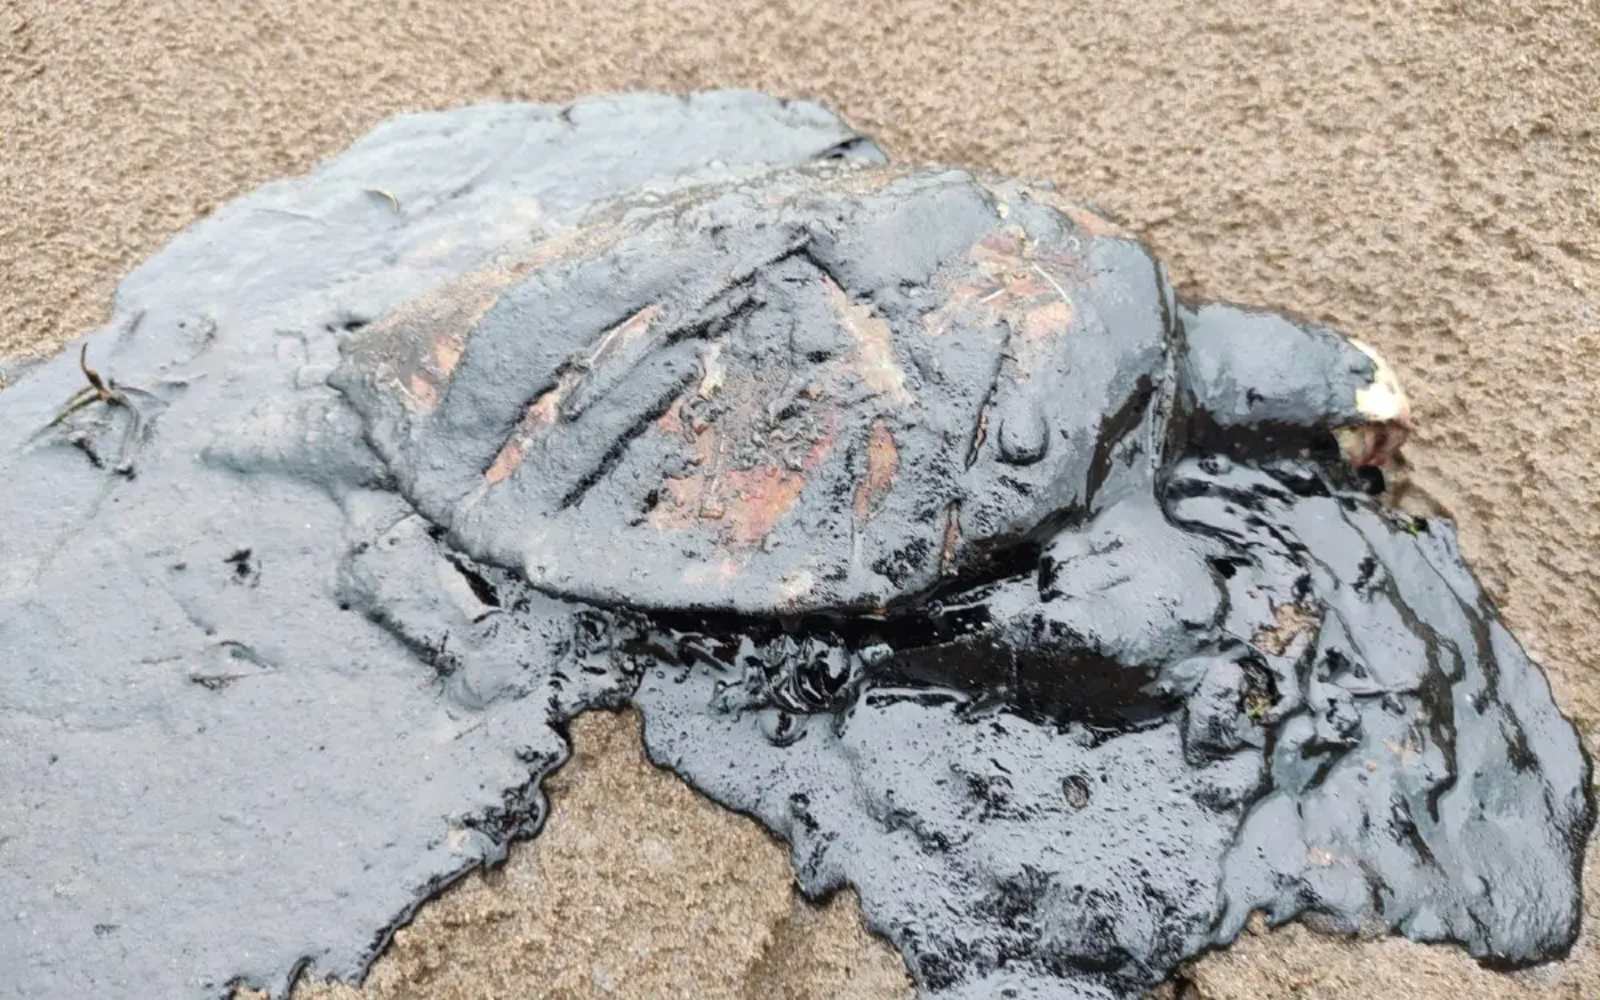 Animales muertos por petroleo en Veracruz, segundo hecho similar en los últimos días